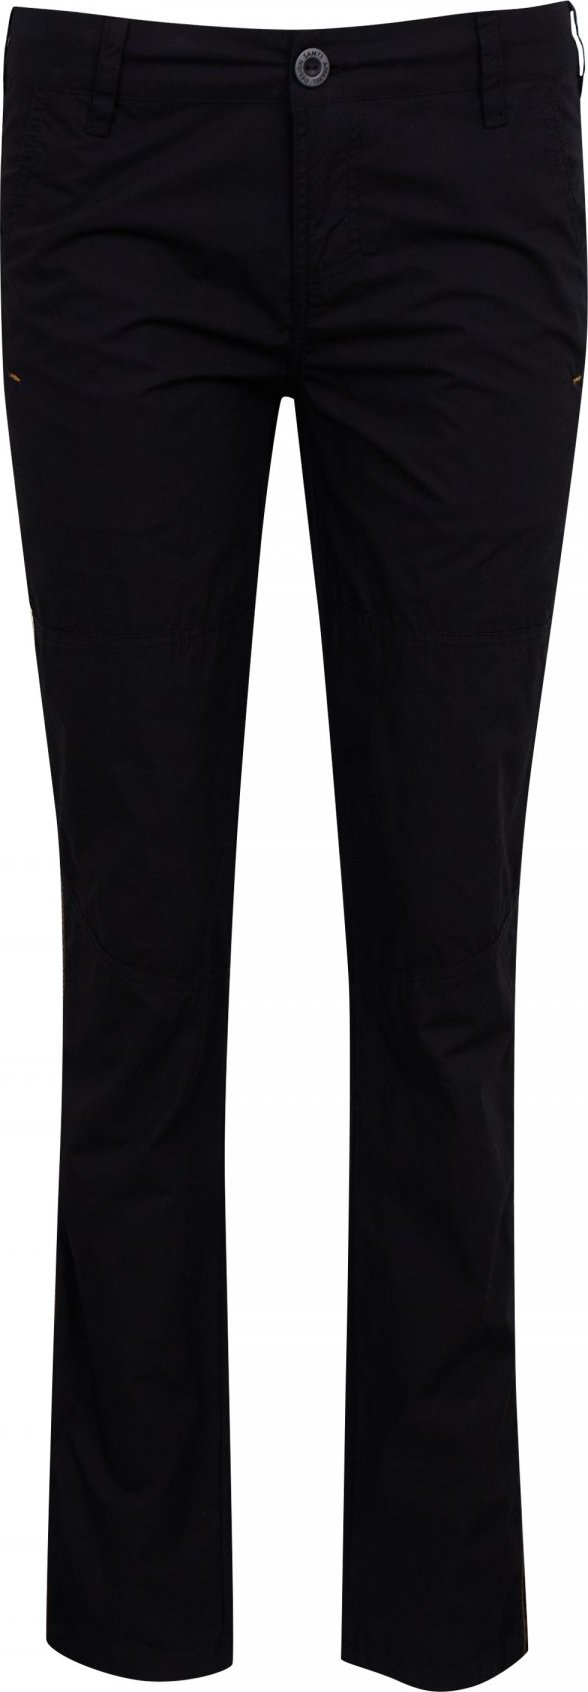 Dámské kalhoty SAM 73 Helena černé Velikost: XL